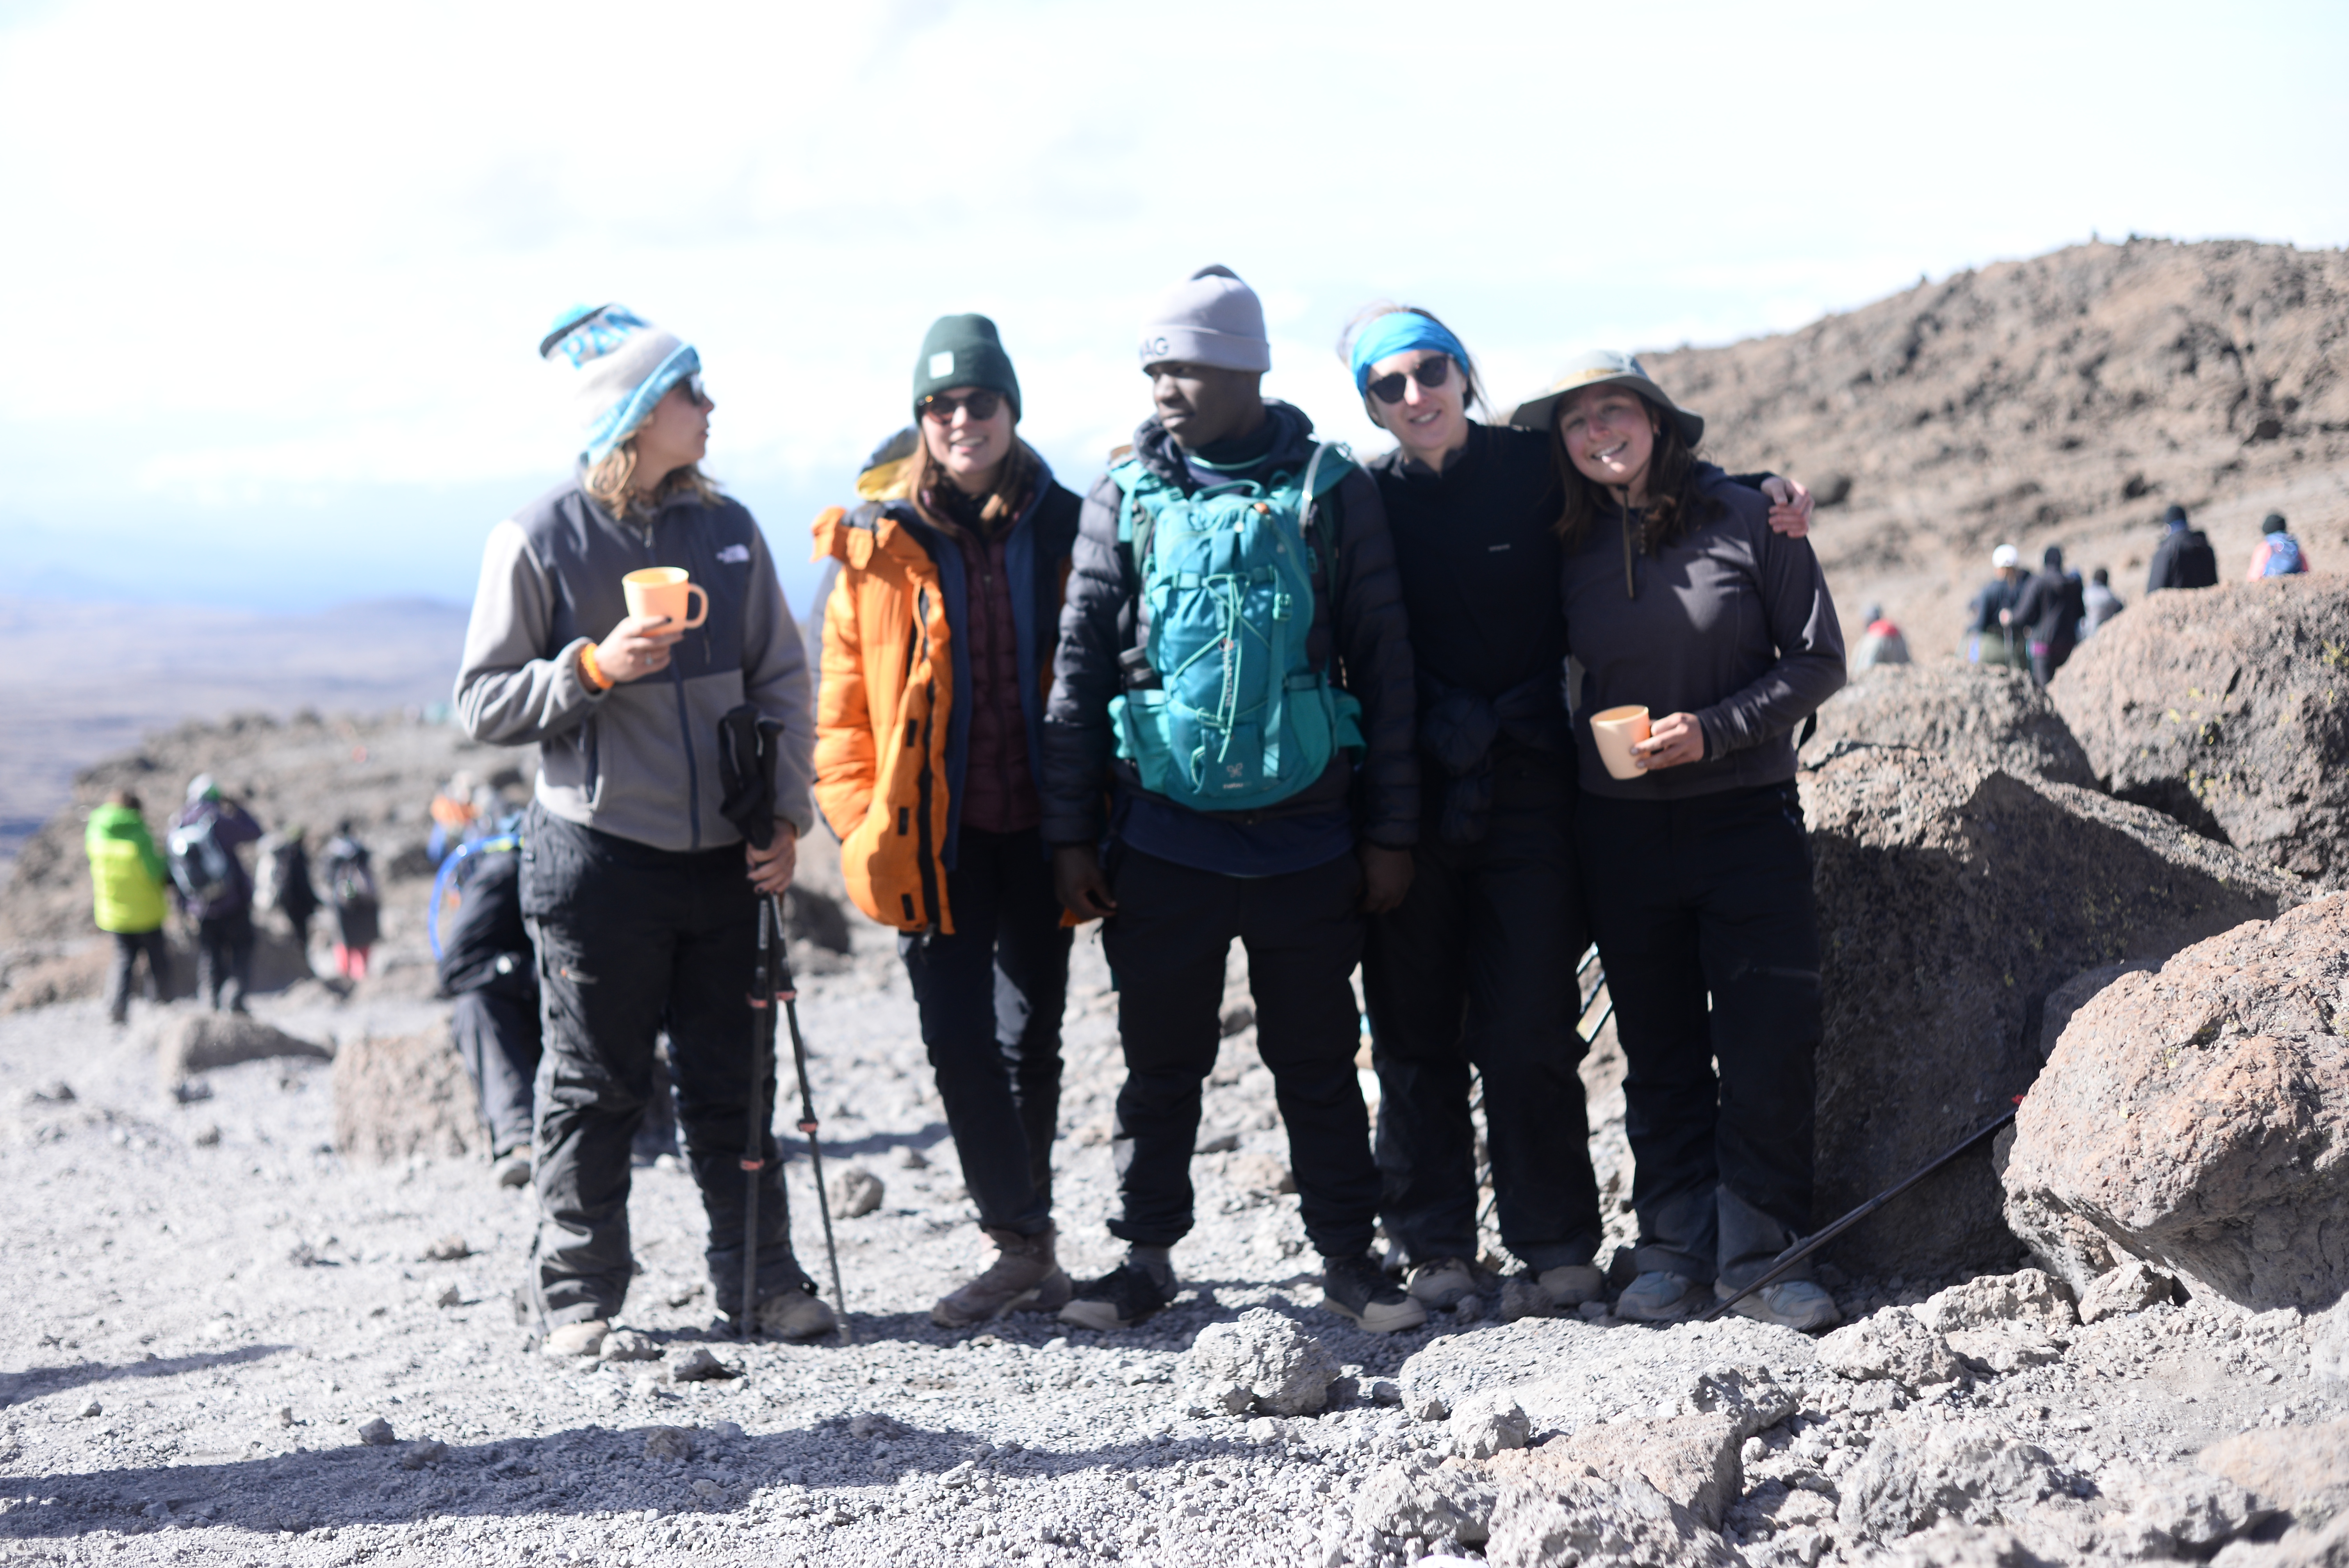 Climbing Mount Kilimanjaro | Tanzania Solely Tours